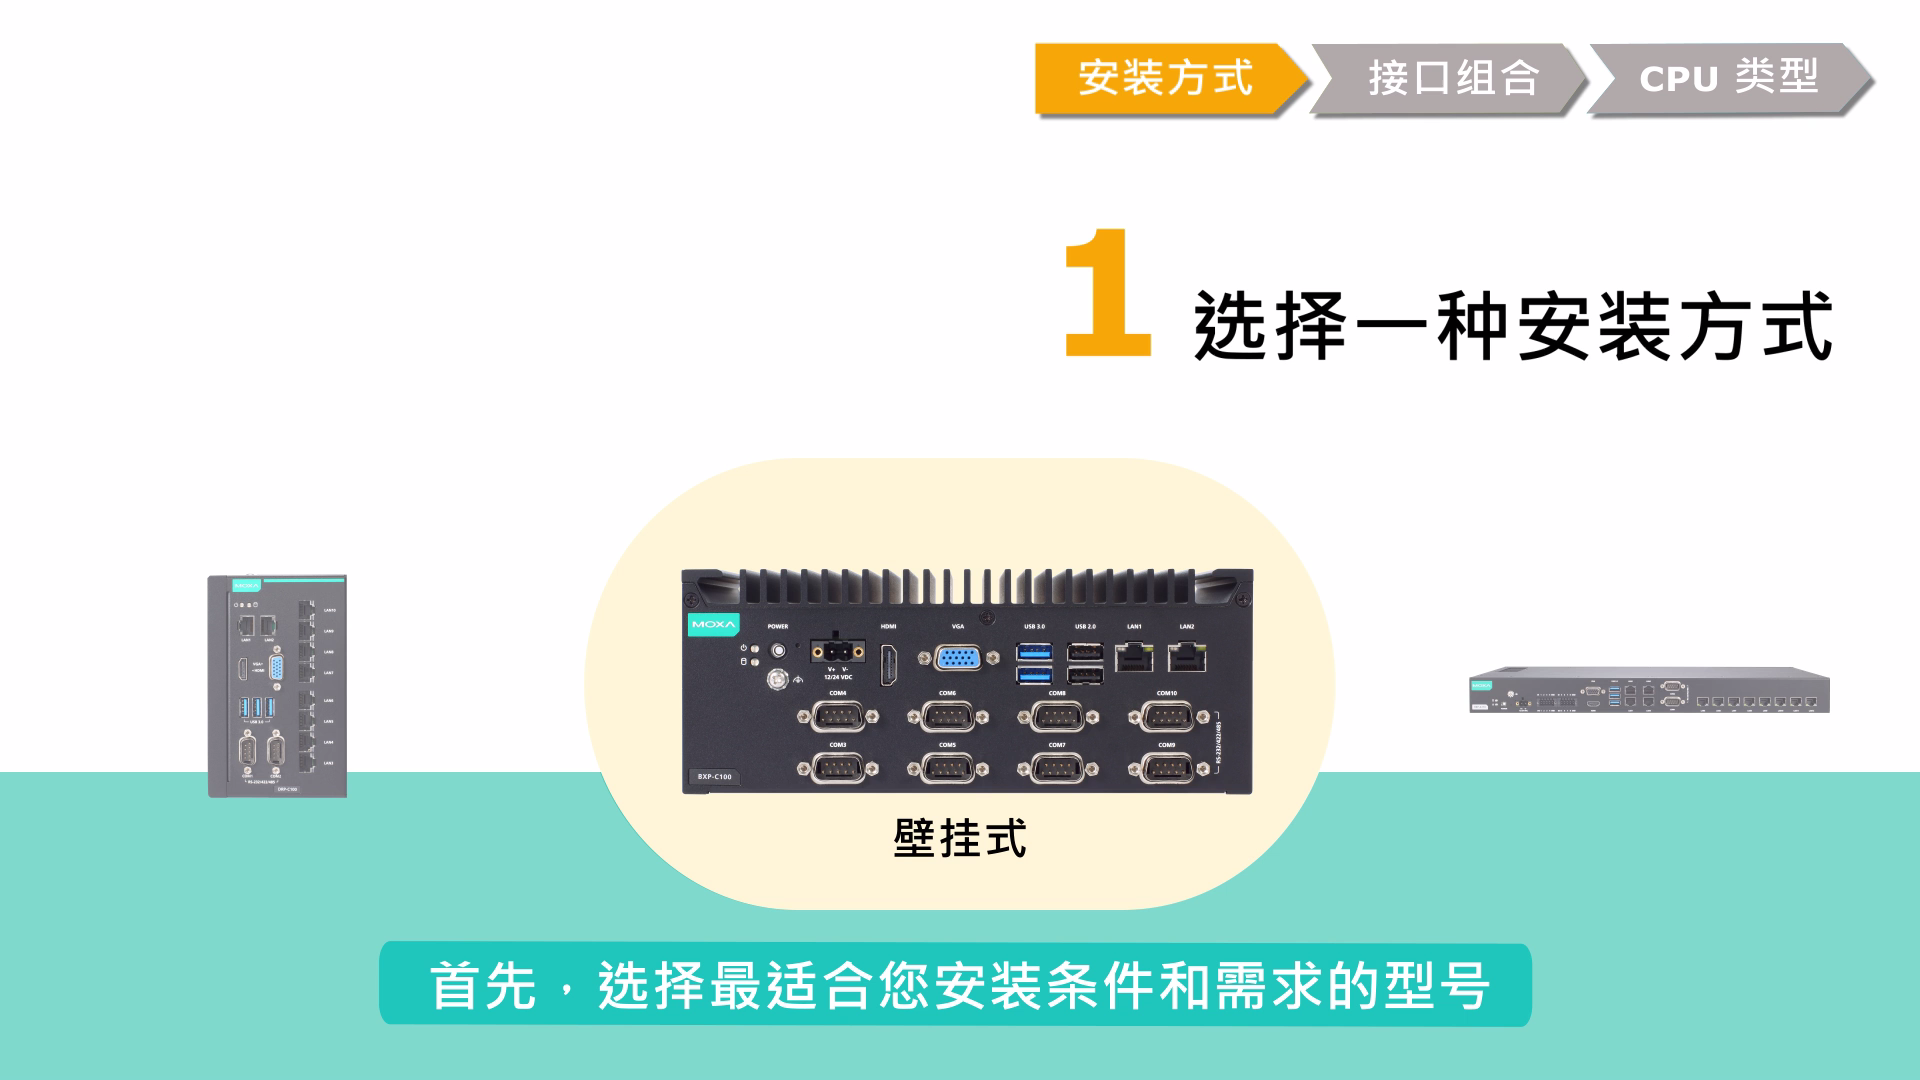  新一代 x86 工业计算机的 3 个关键选型标准